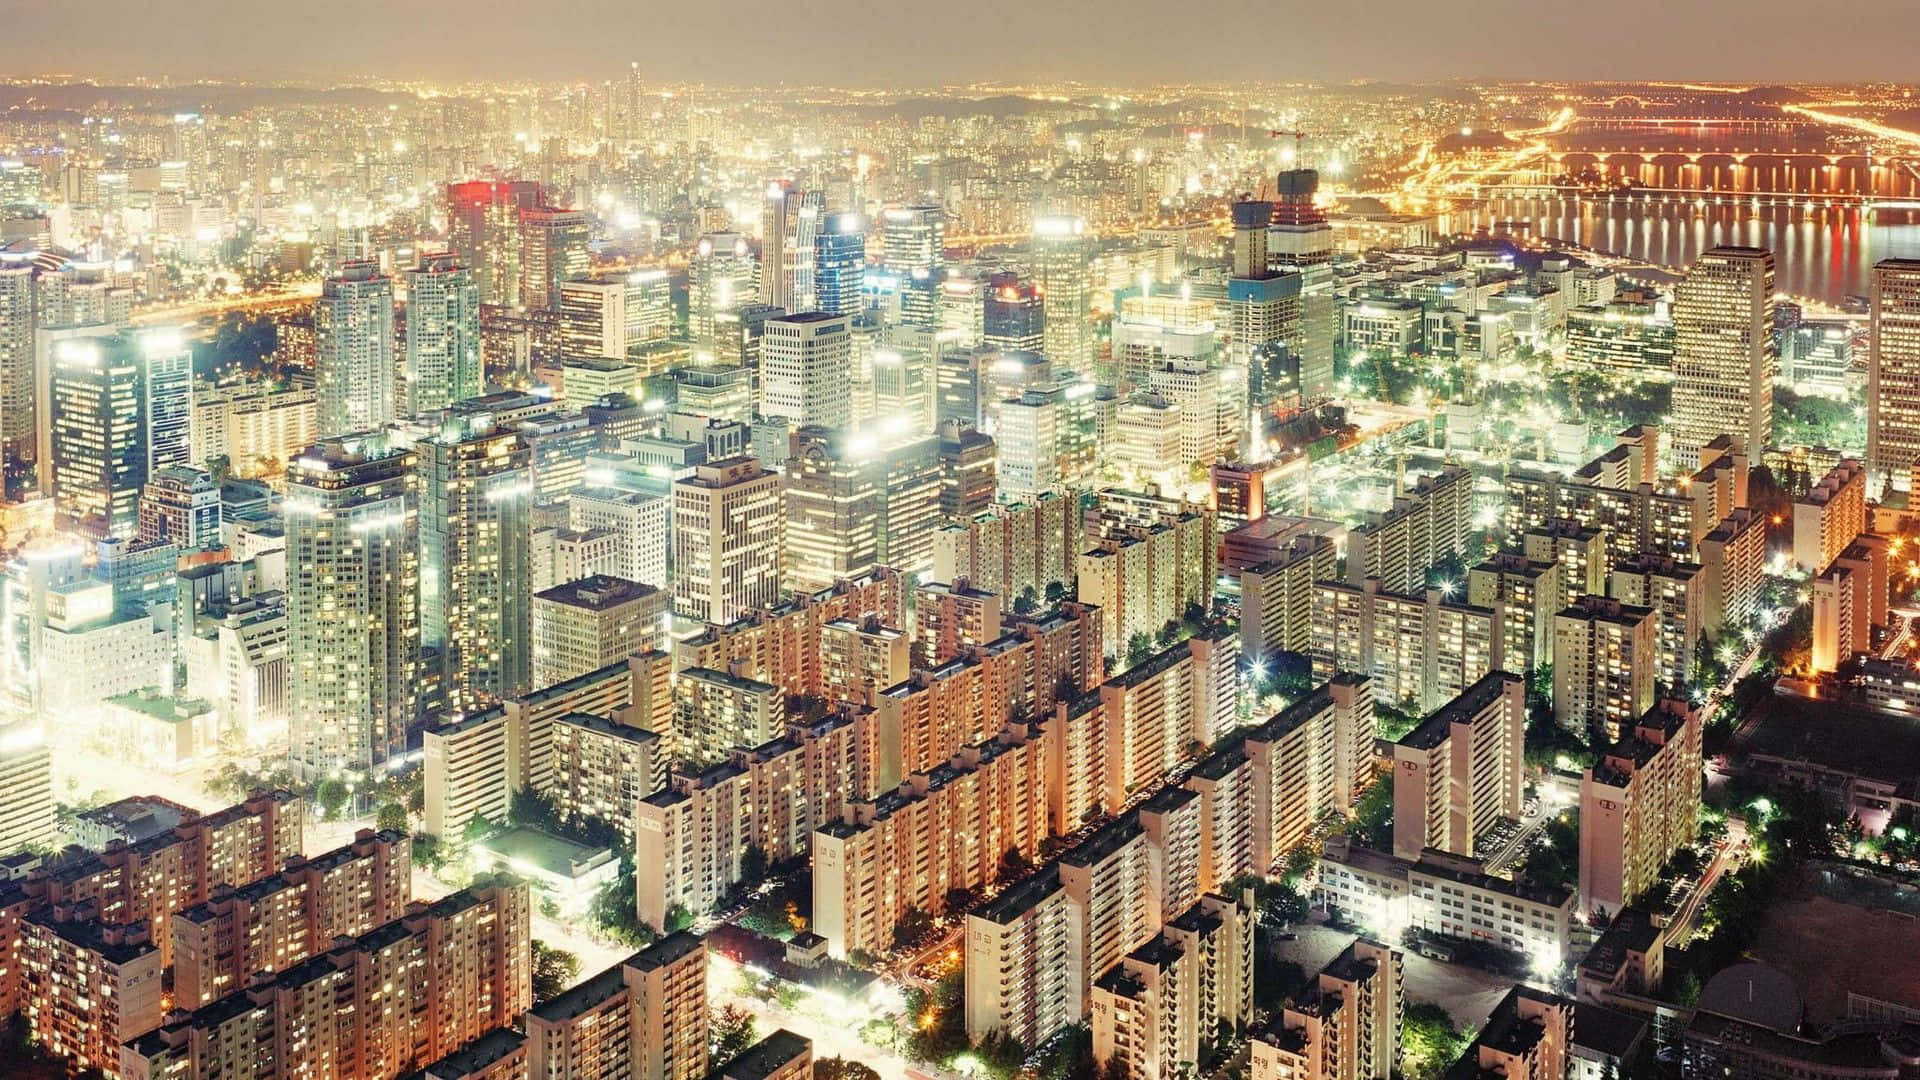 Impresionantehorizonte Nocturno De La Ciudad De Seúl